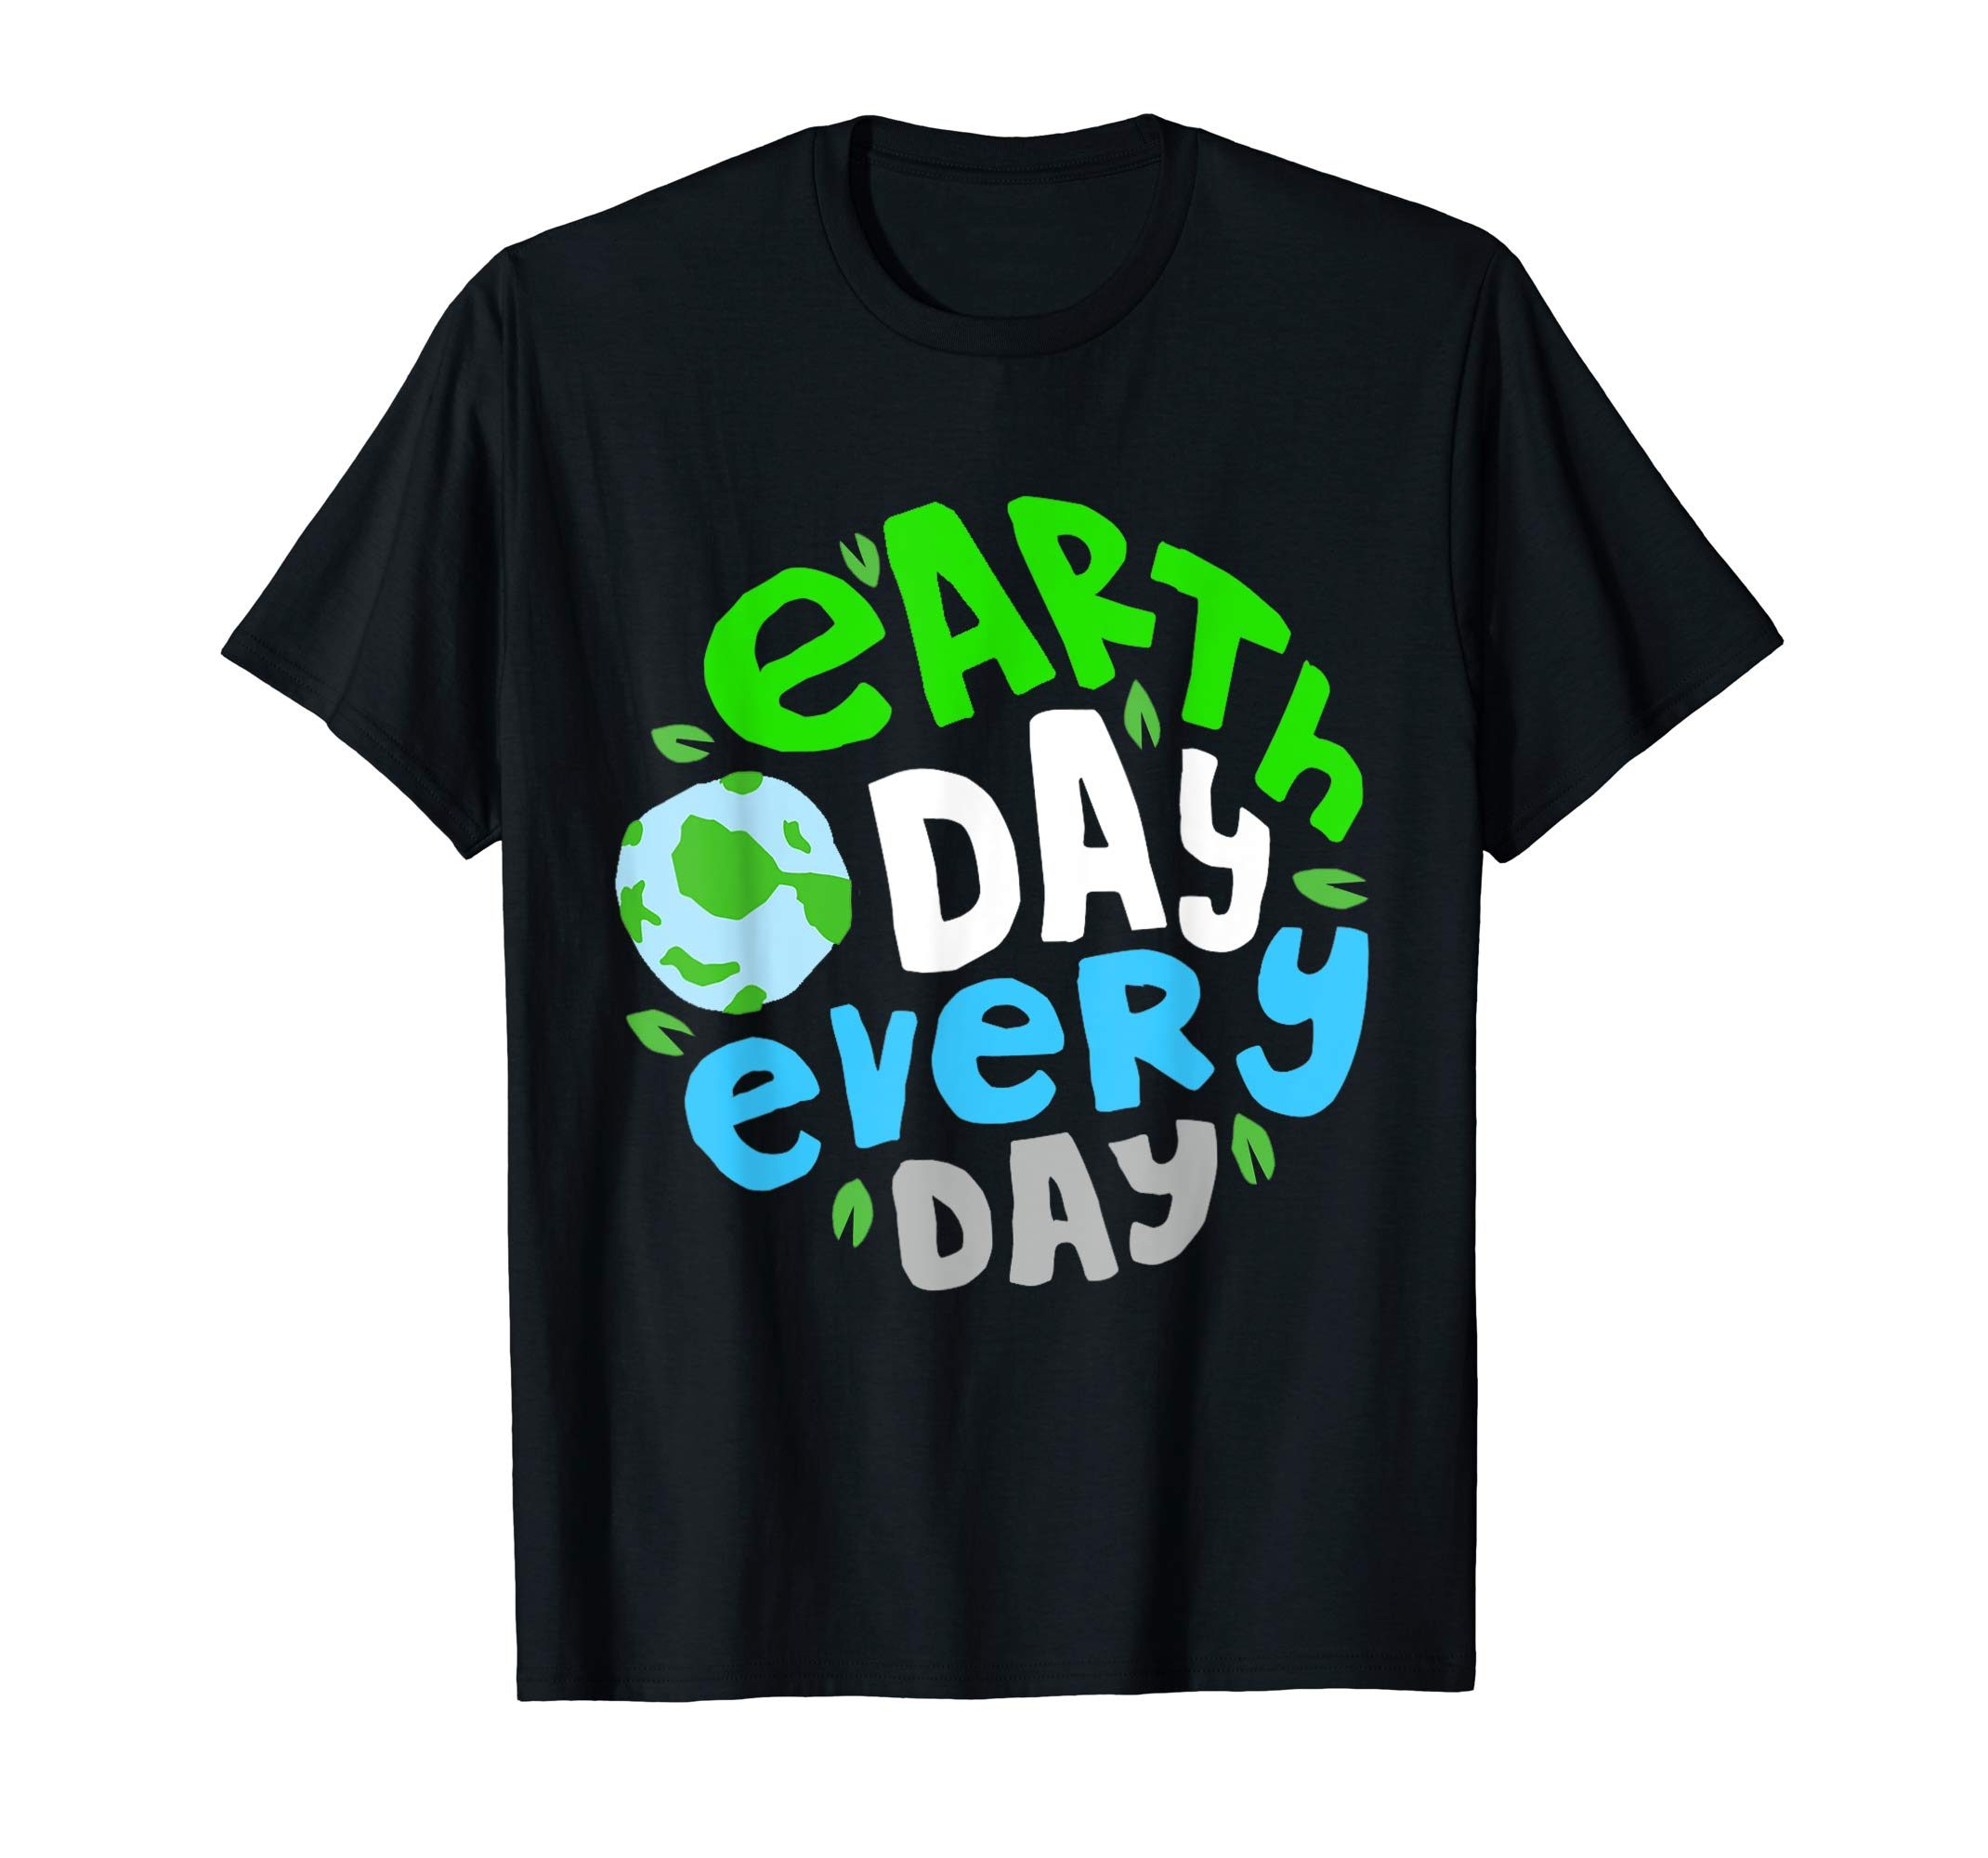 Earth day 2019 T shirt Perfect Gift shirt Men women kids - ShirtsMango ...